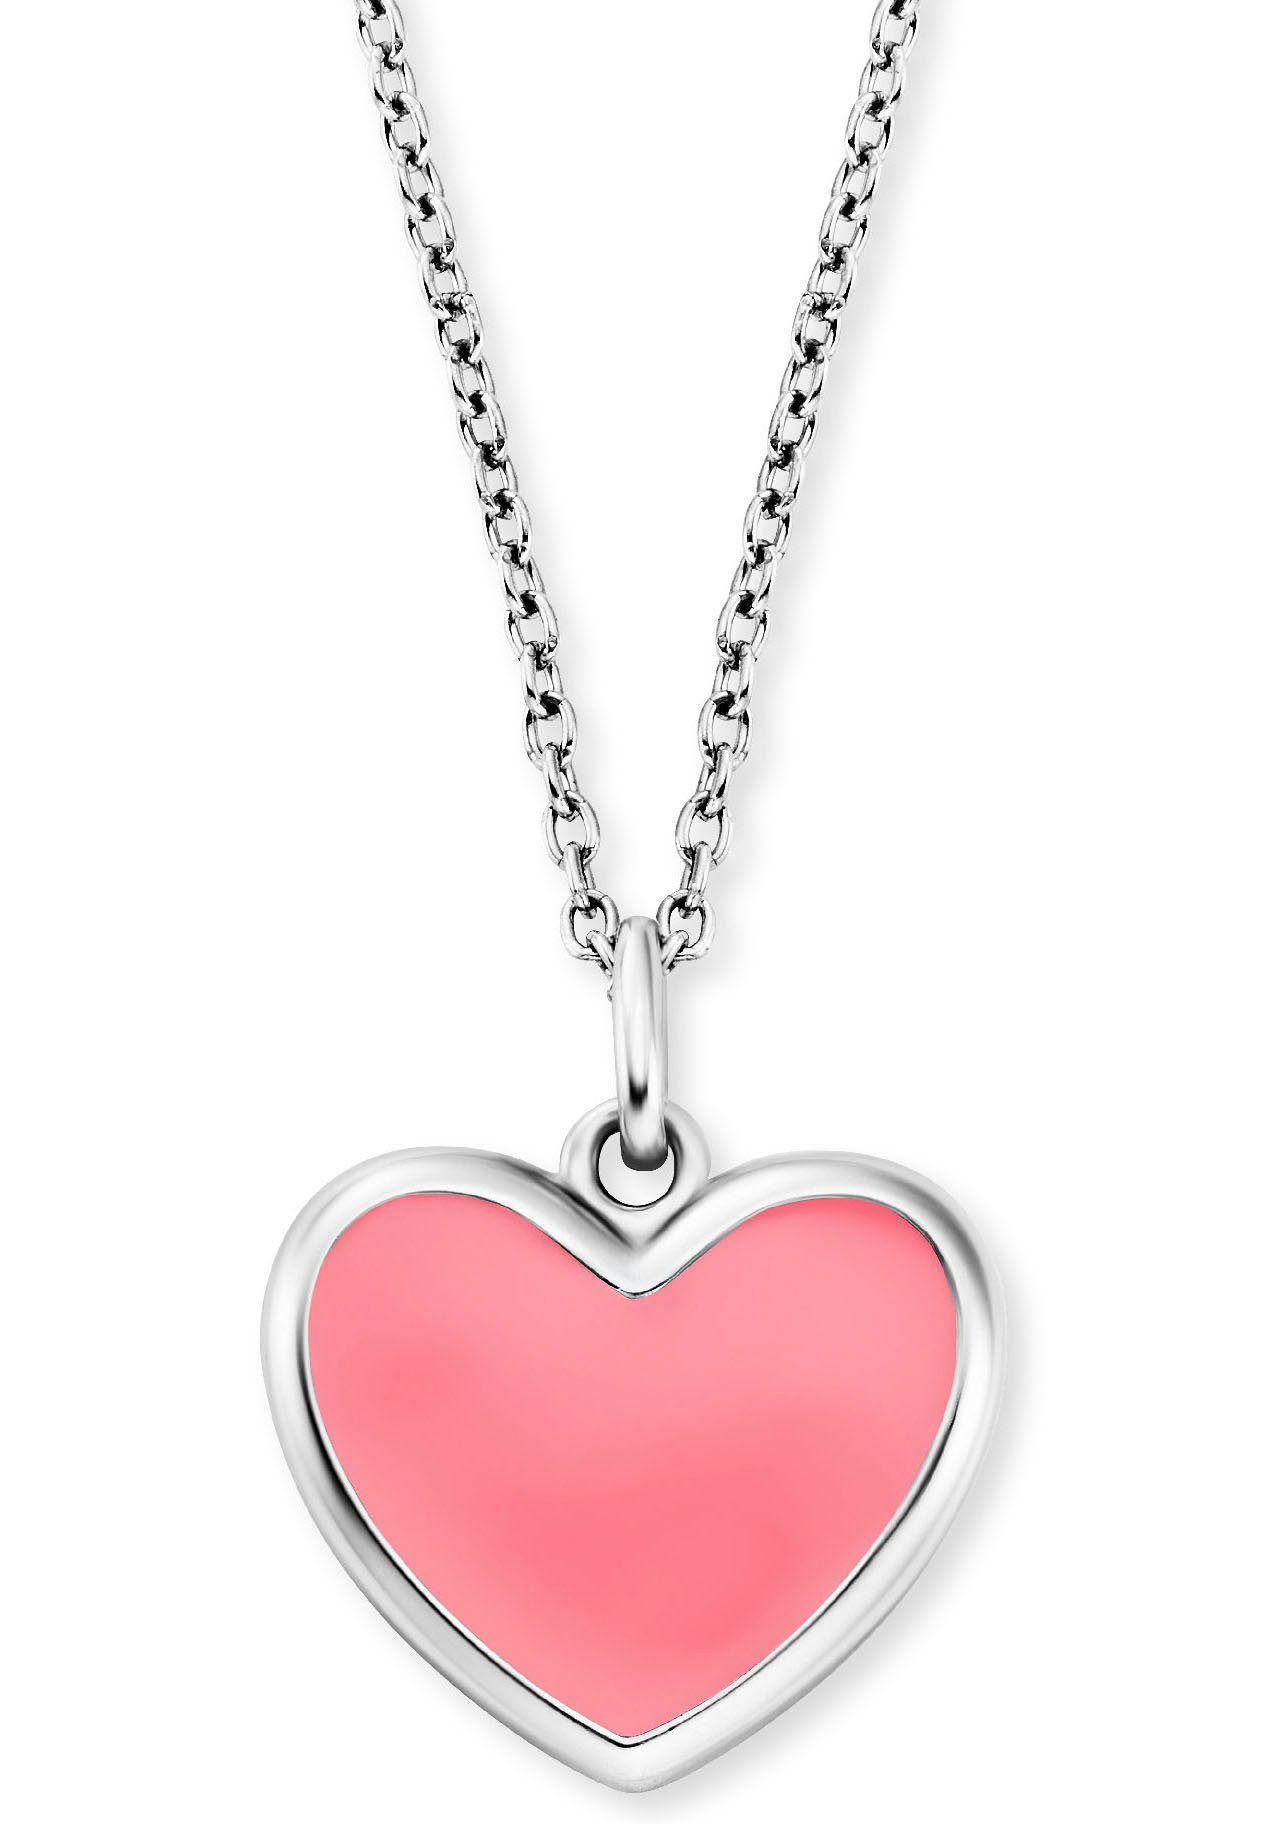 Herzengel Kette mit Anhänger Schmuck Geschenk, Little Heart, Herz, HEN-HEART-06, HEN-HEART-13 silberfarben-rosa